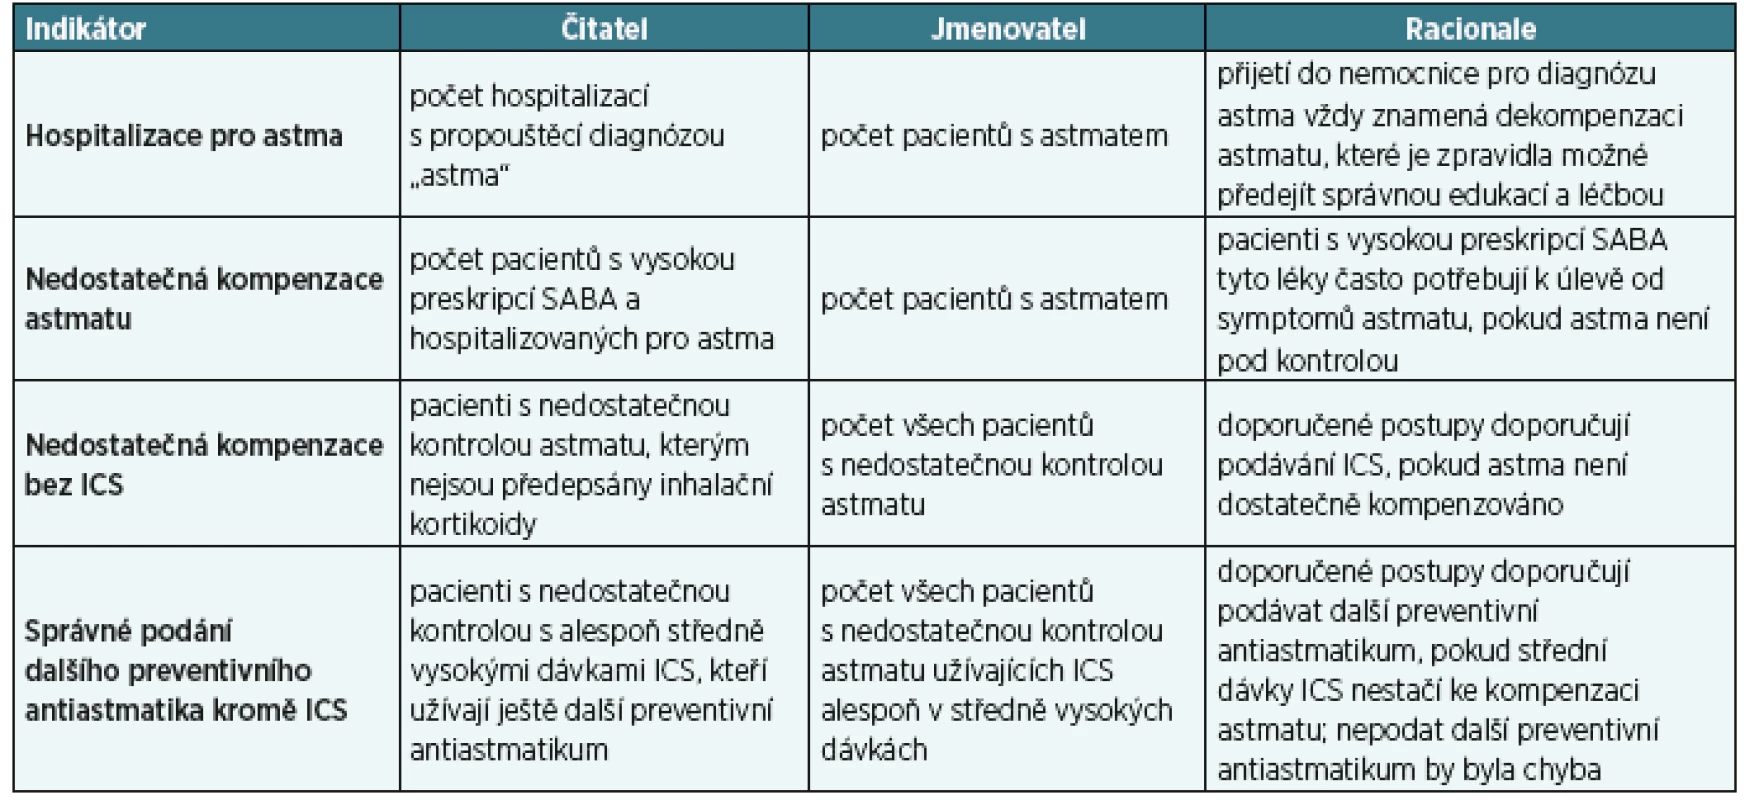 Popis čtyř indikátorů kvality péče o astmatiky